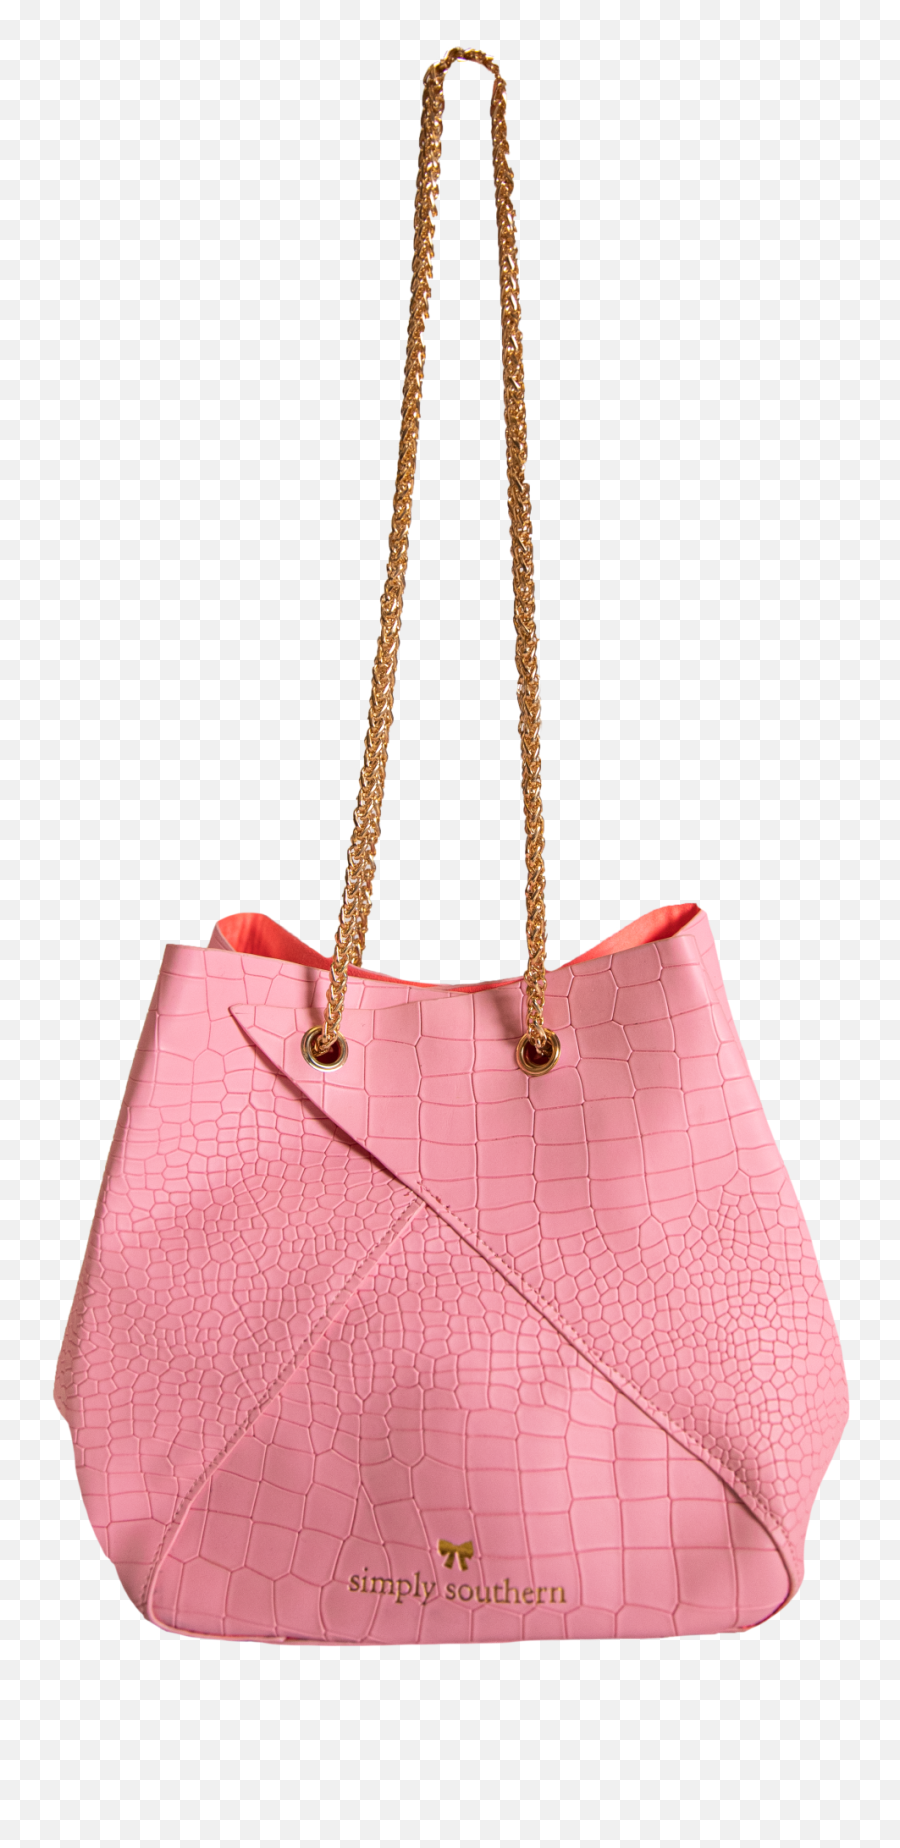 Simply Southern Leather Pink Bunchy Bag - For Women Emoji,Vegan Thanksgiving Emoji